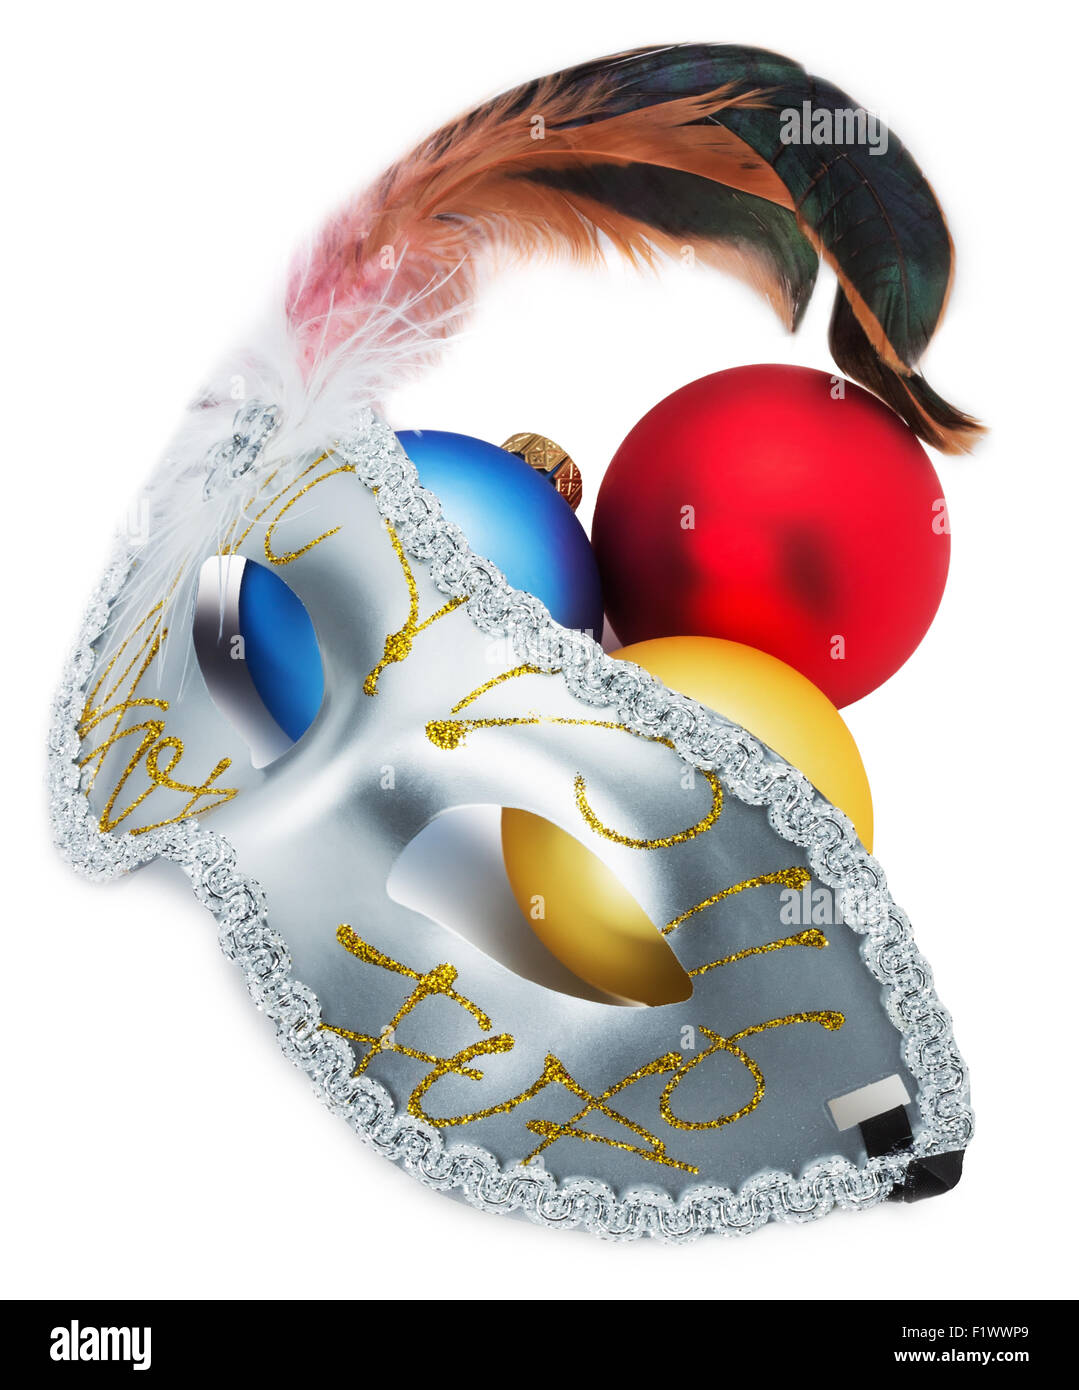 Masque de carnaval et des boules de Noël isolé sur le fond blanc. Banque D'Images